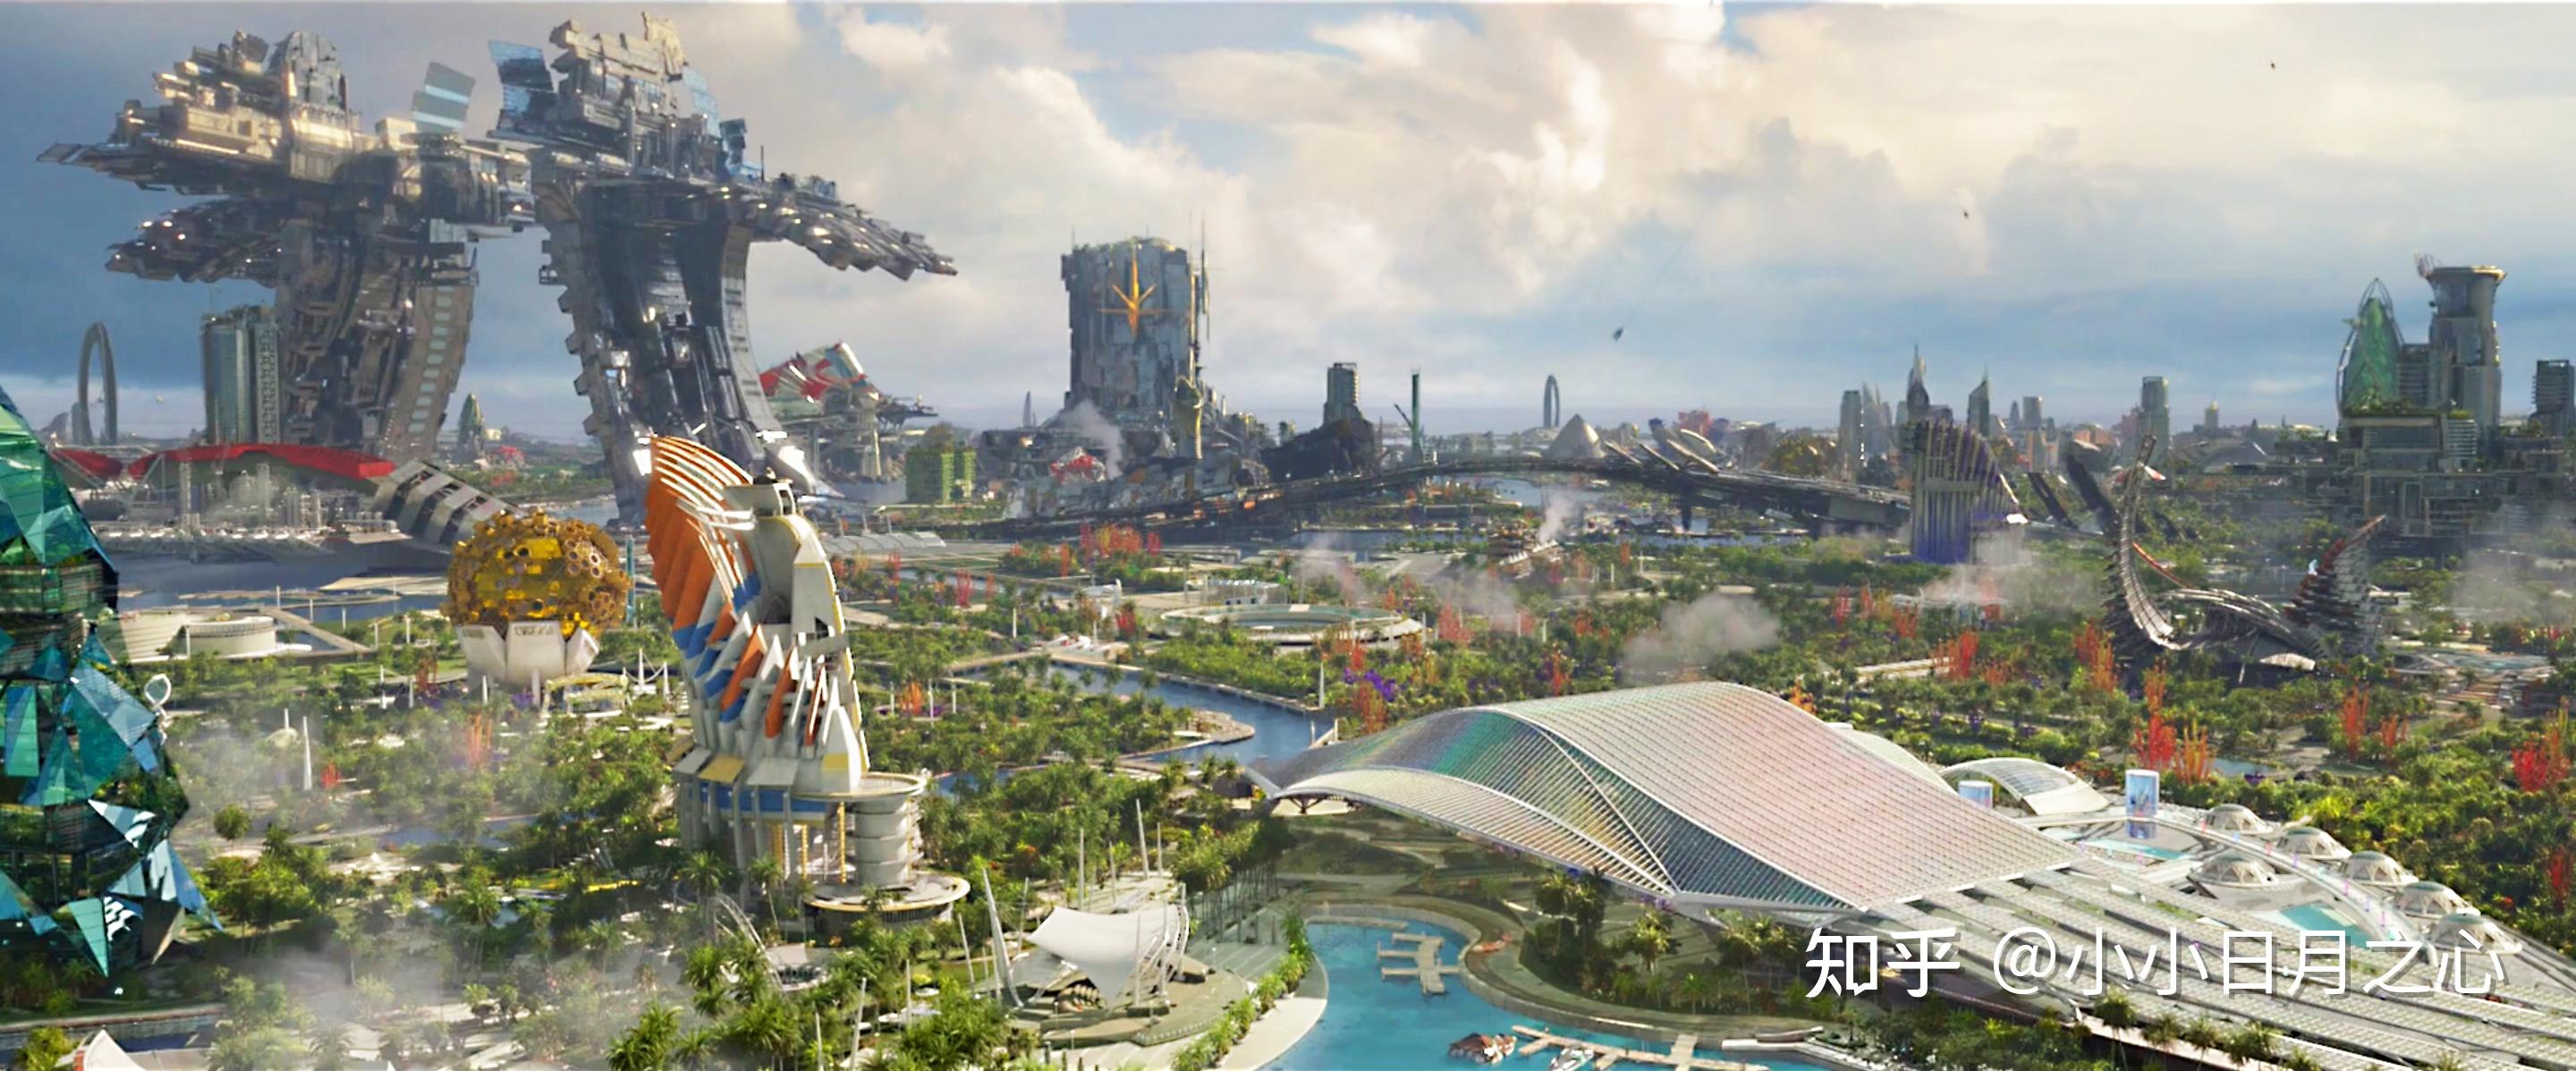 哪些科幻电影介绍的未来城市形态让你觉得很有远见